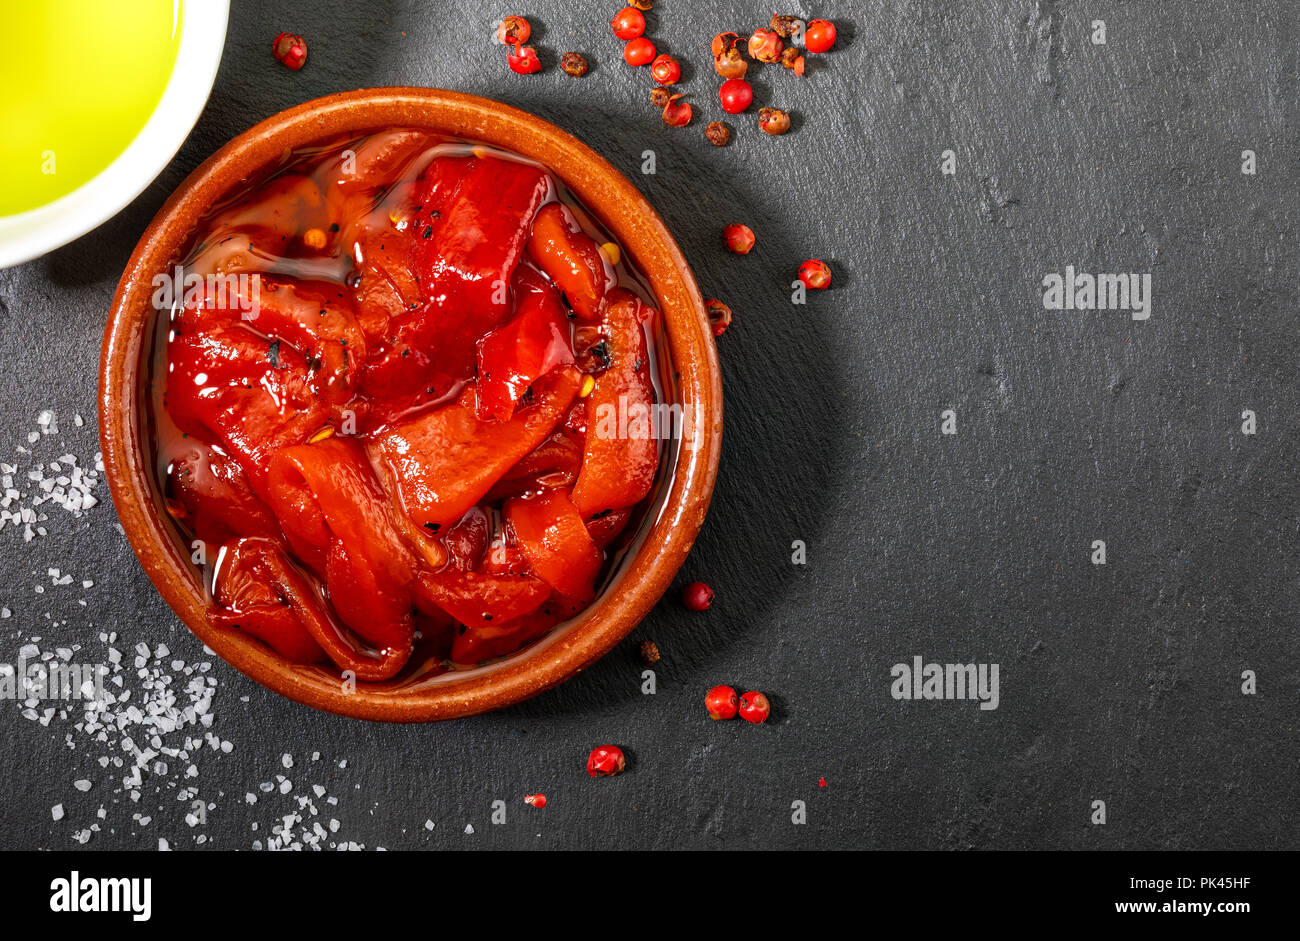 Délicieux et appétissants de poivron rouge rôti à la maison. Huile d'olive vierge extra, sel et poivre. Sur fond texturé en noir. Banque D'Images